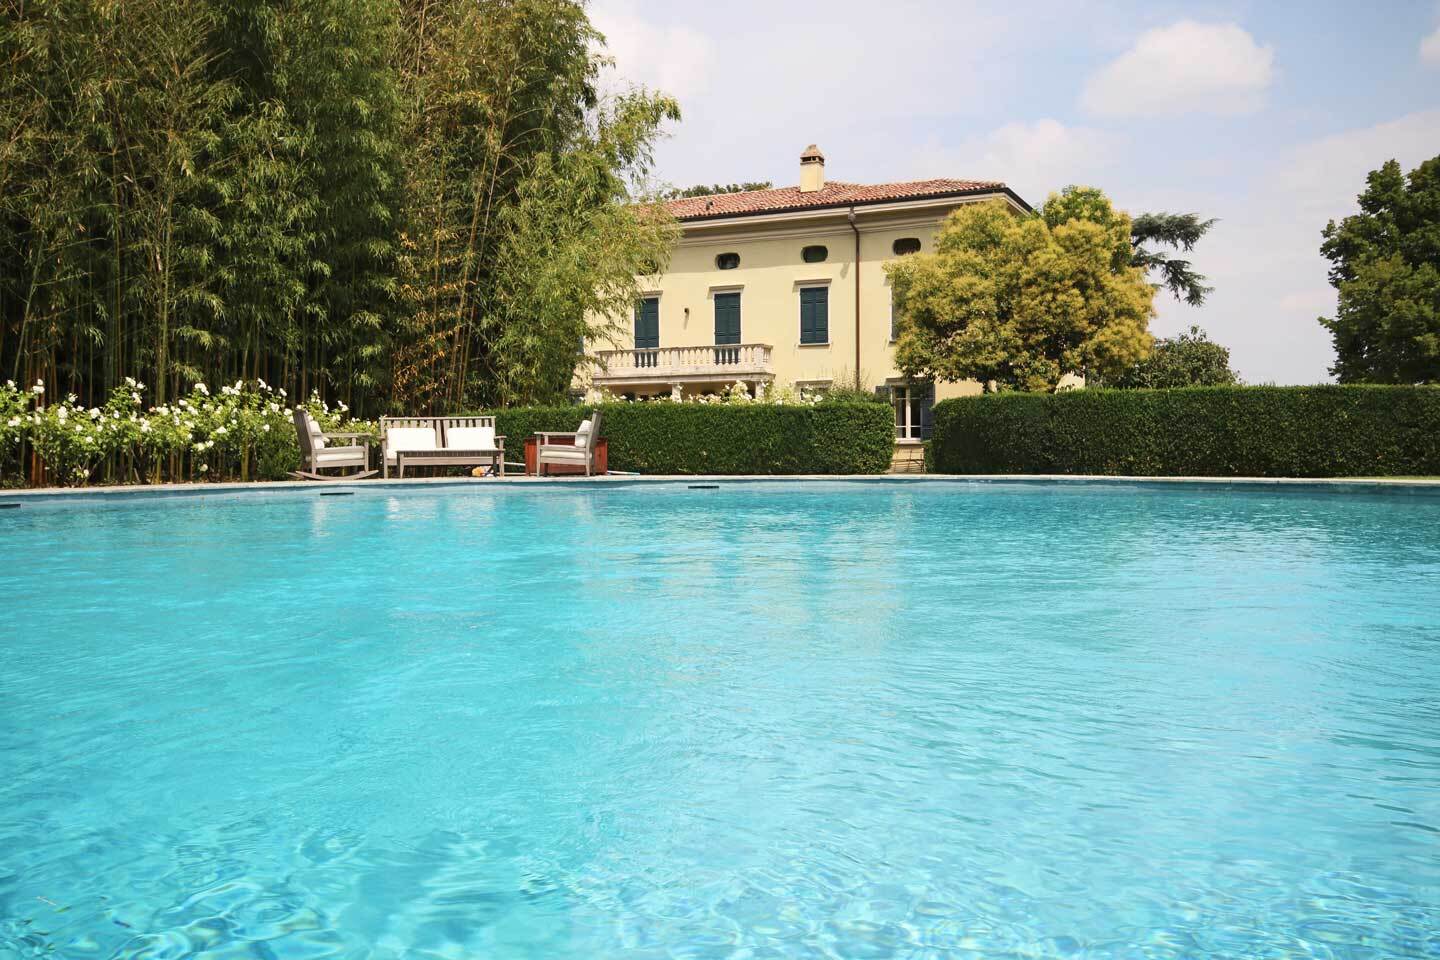 A vendre villa in zone tranquille Collecchio Emilia-Romagna